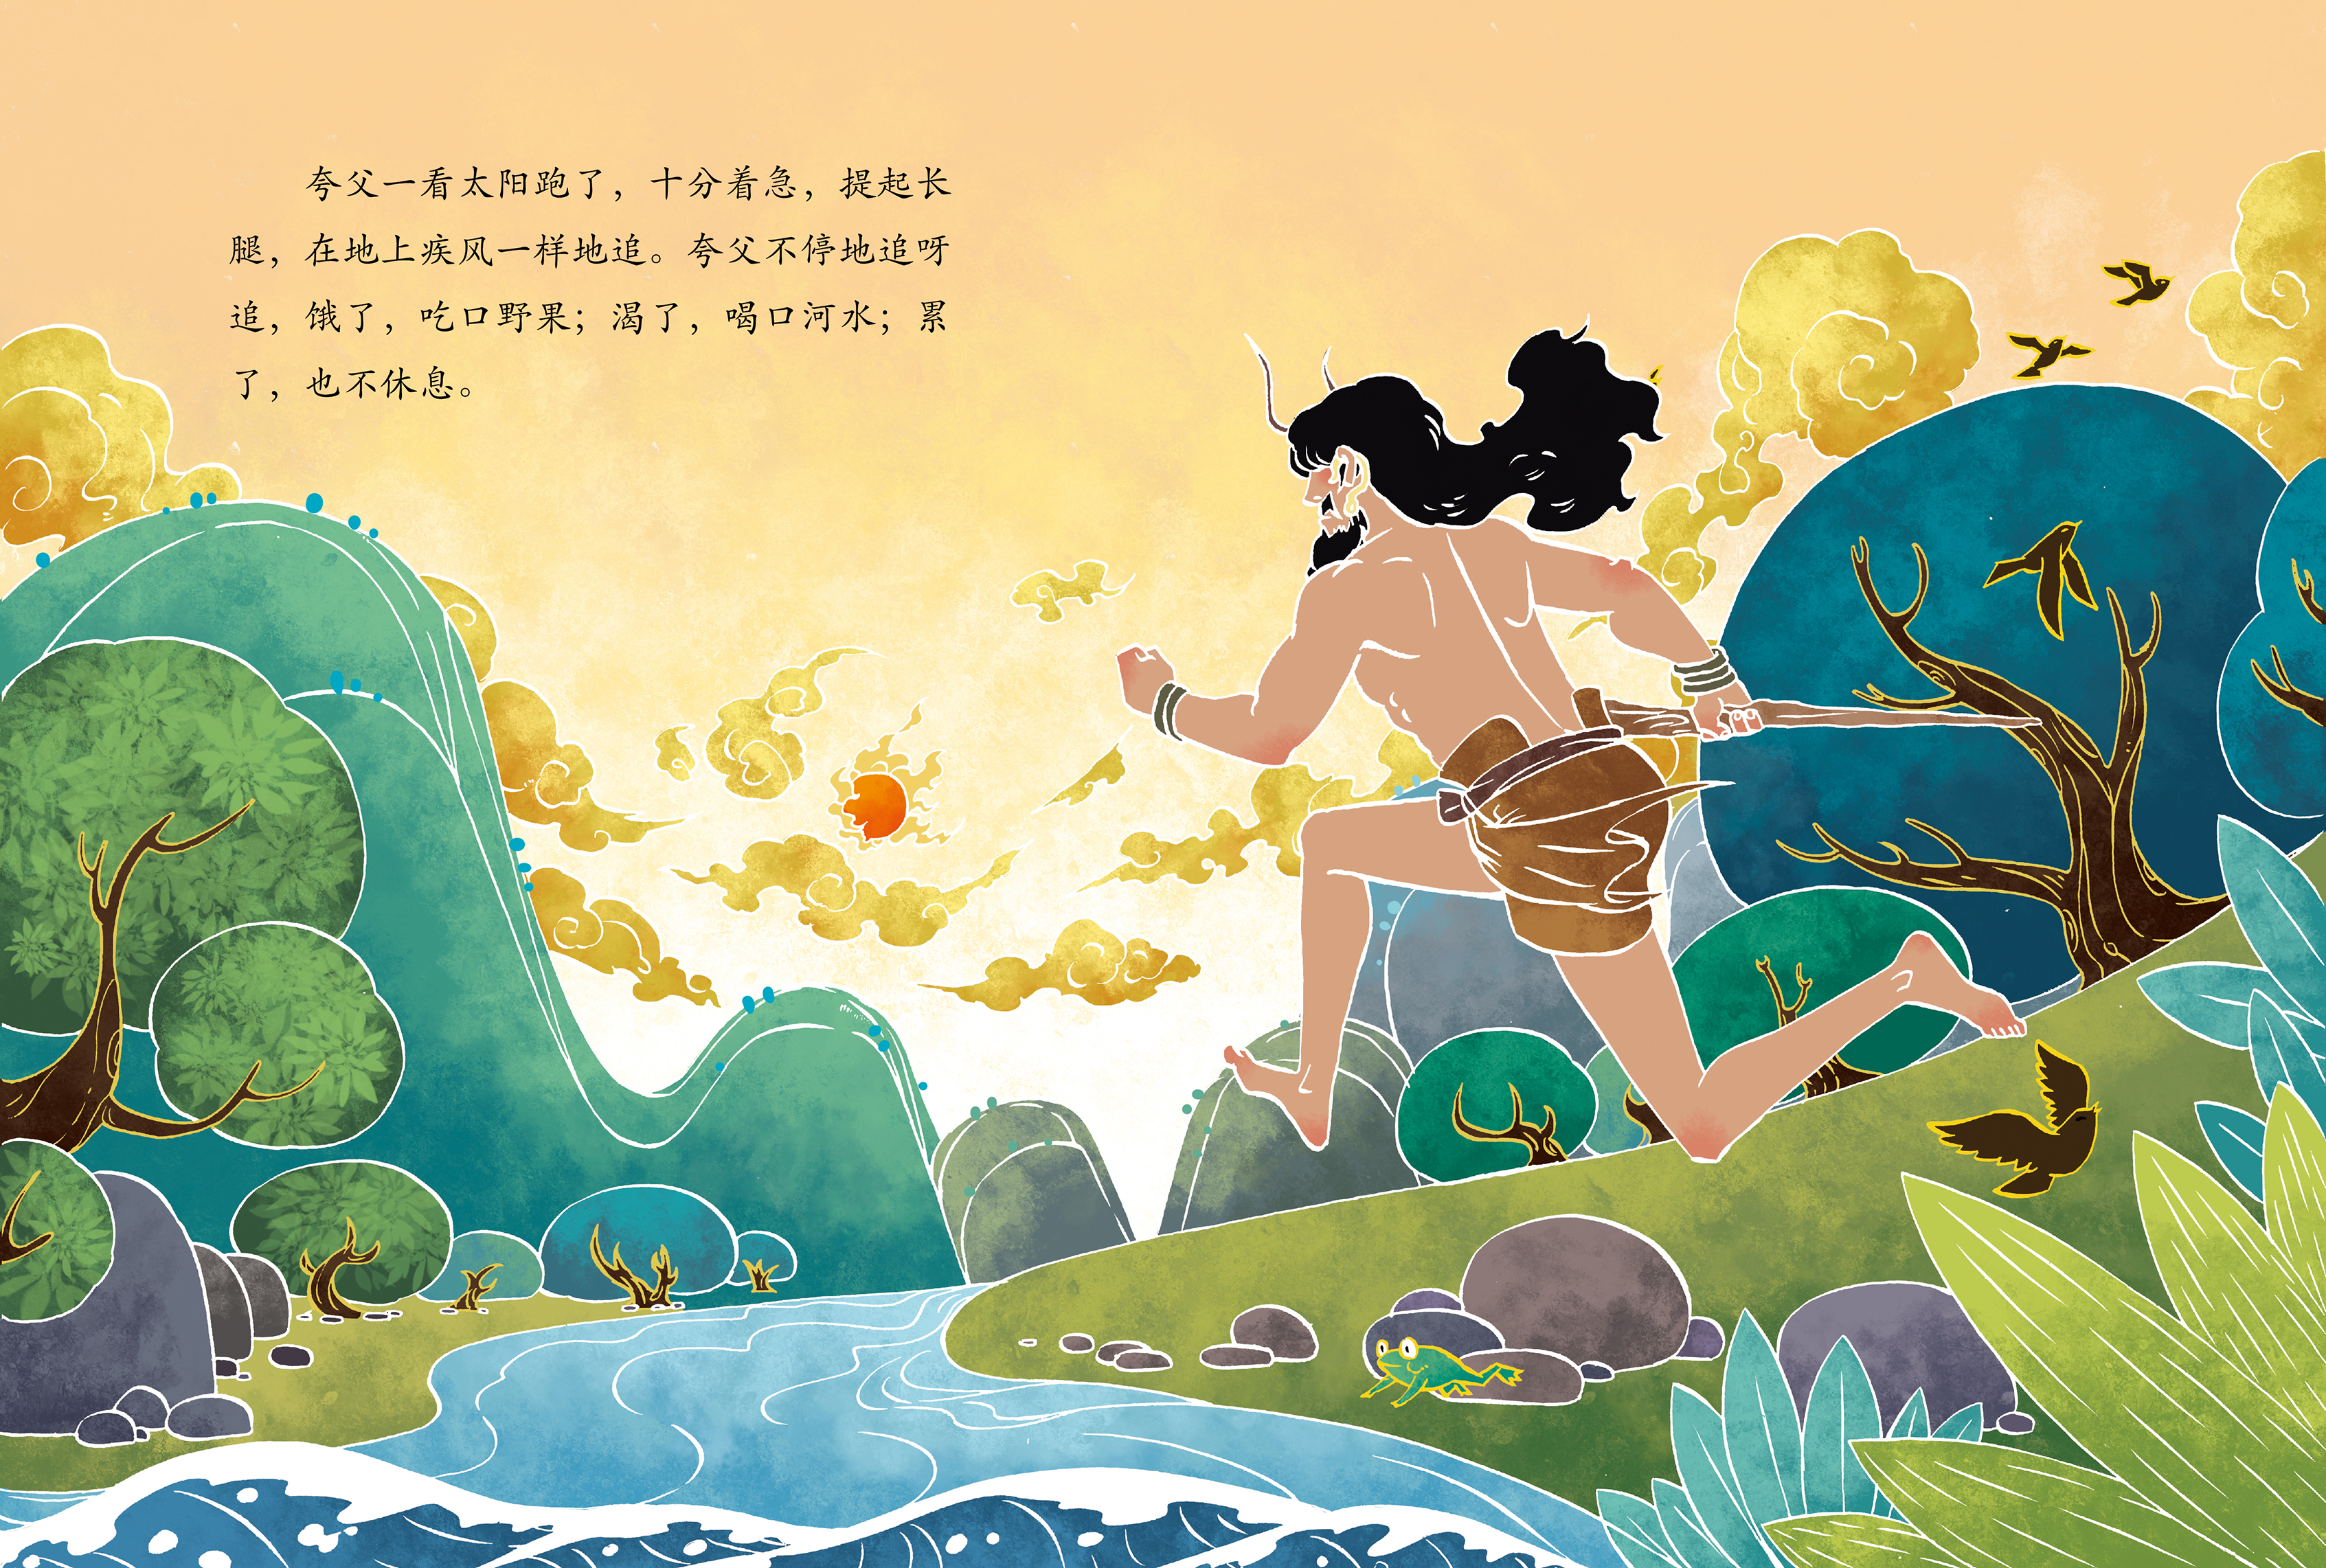 中国神话故事系列《夸父追日》